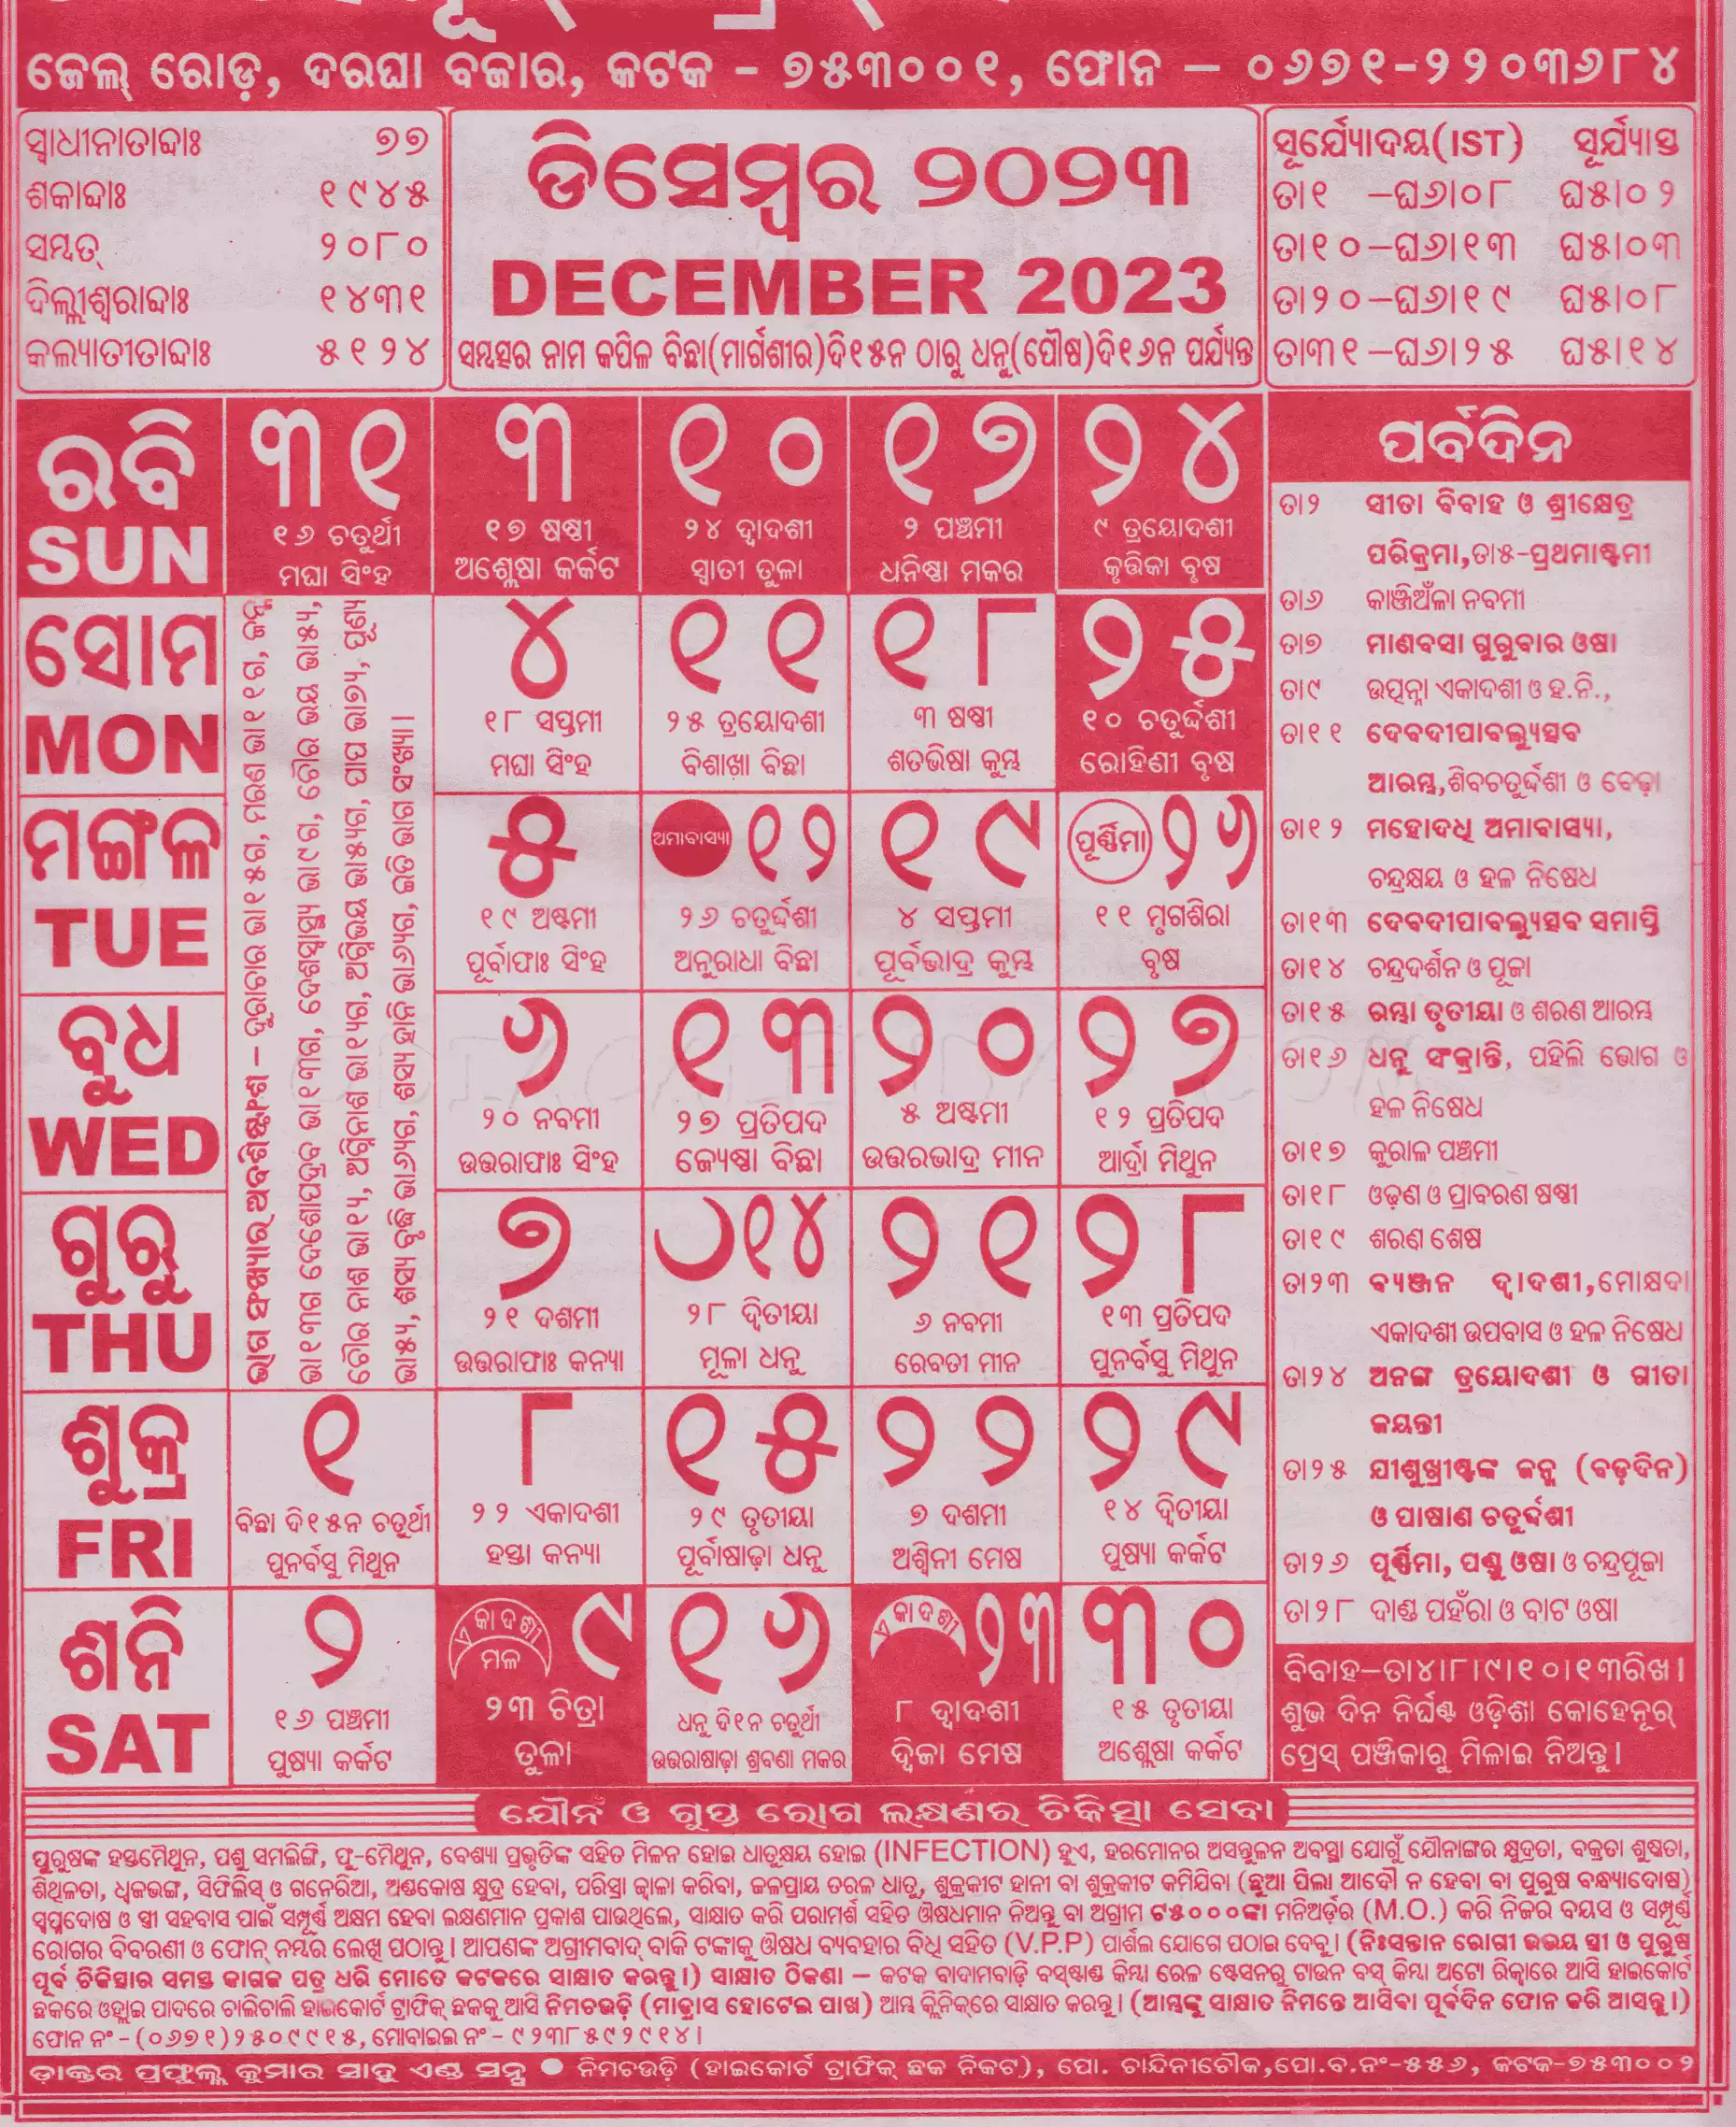 kohinoor calendar december 2023